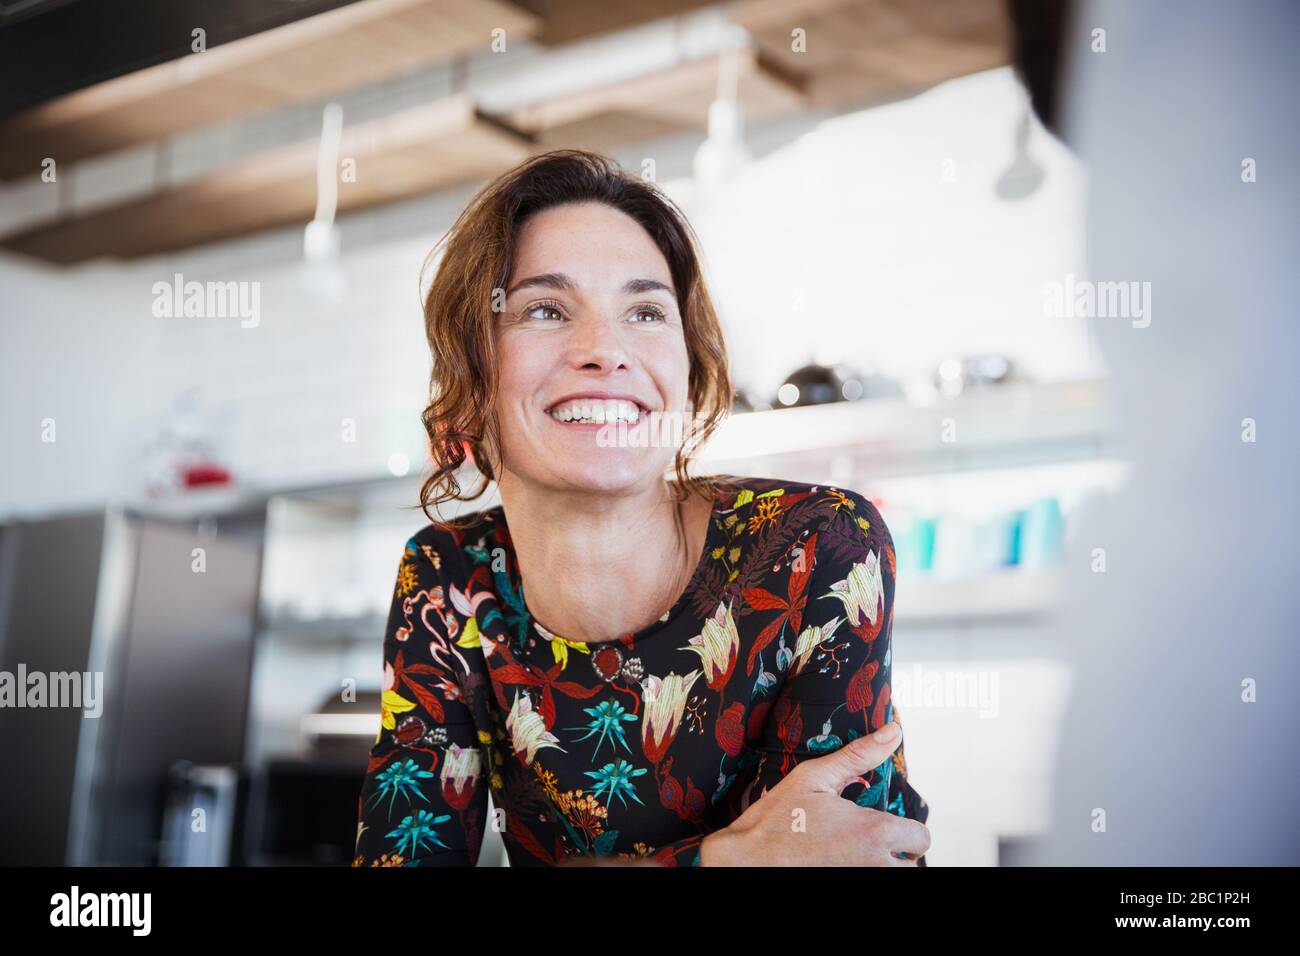 Femme brunette souriante écoutant, regardant loin dans la cuisine Banque D'Images